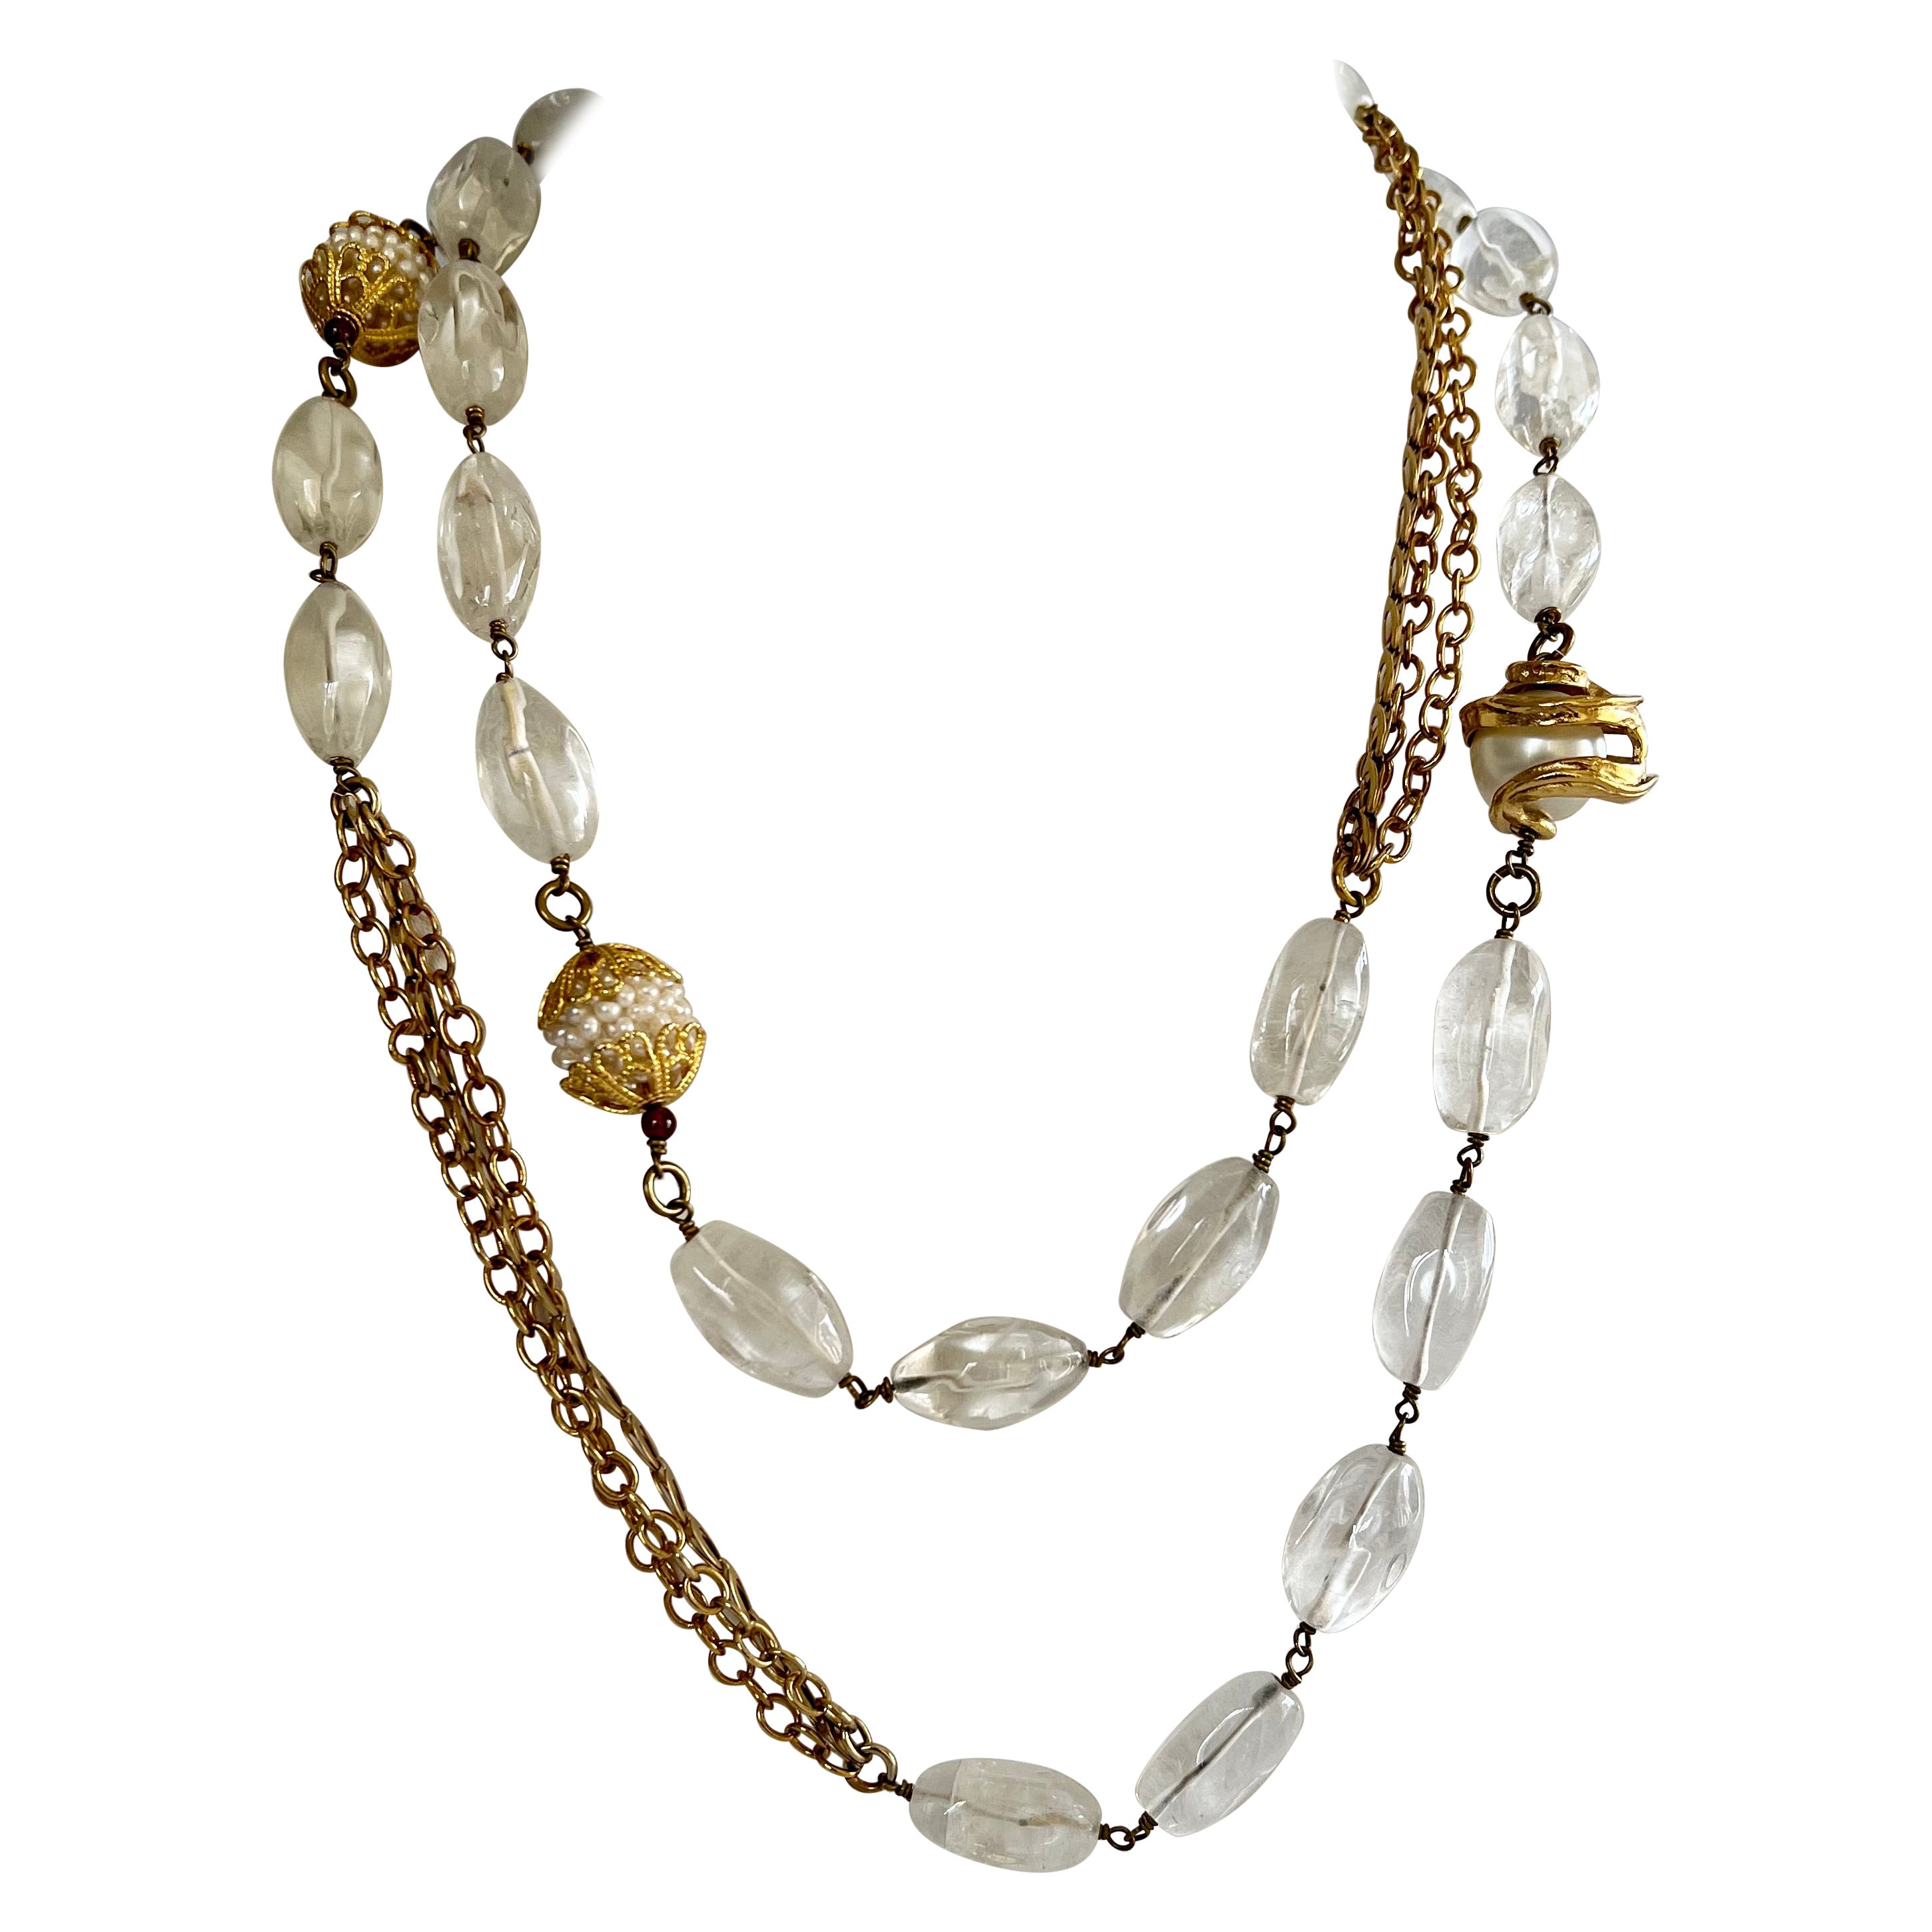 Chaîne double, collier sautoir français en cristal de roche, bronze et fausse perle